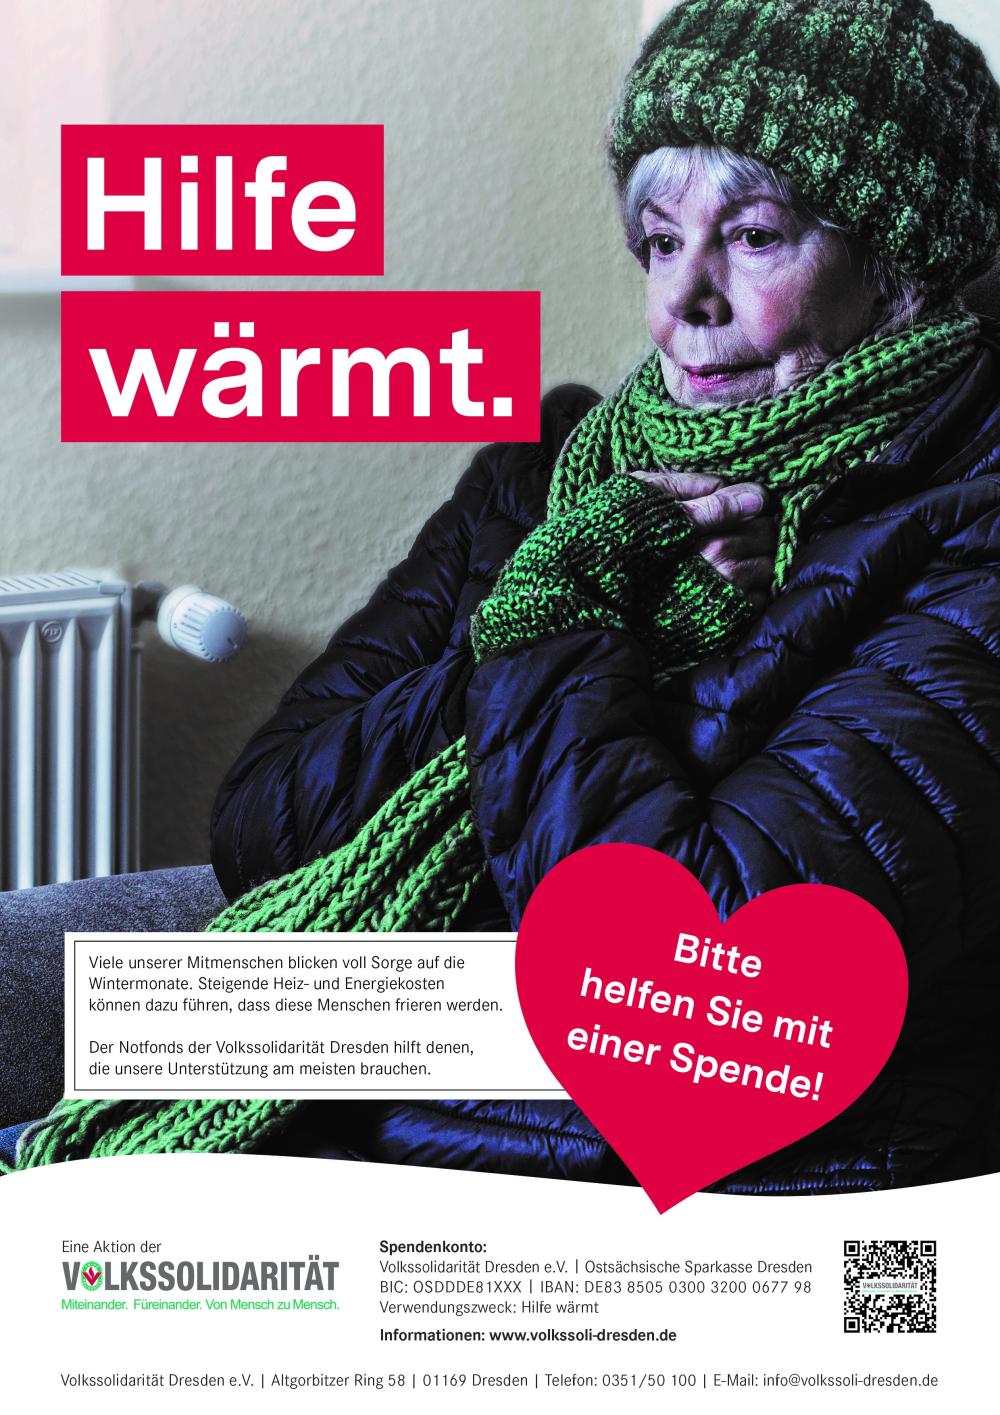 Spendenaufruf "Hilfe wärmt" der Volkssolidarität Dresden